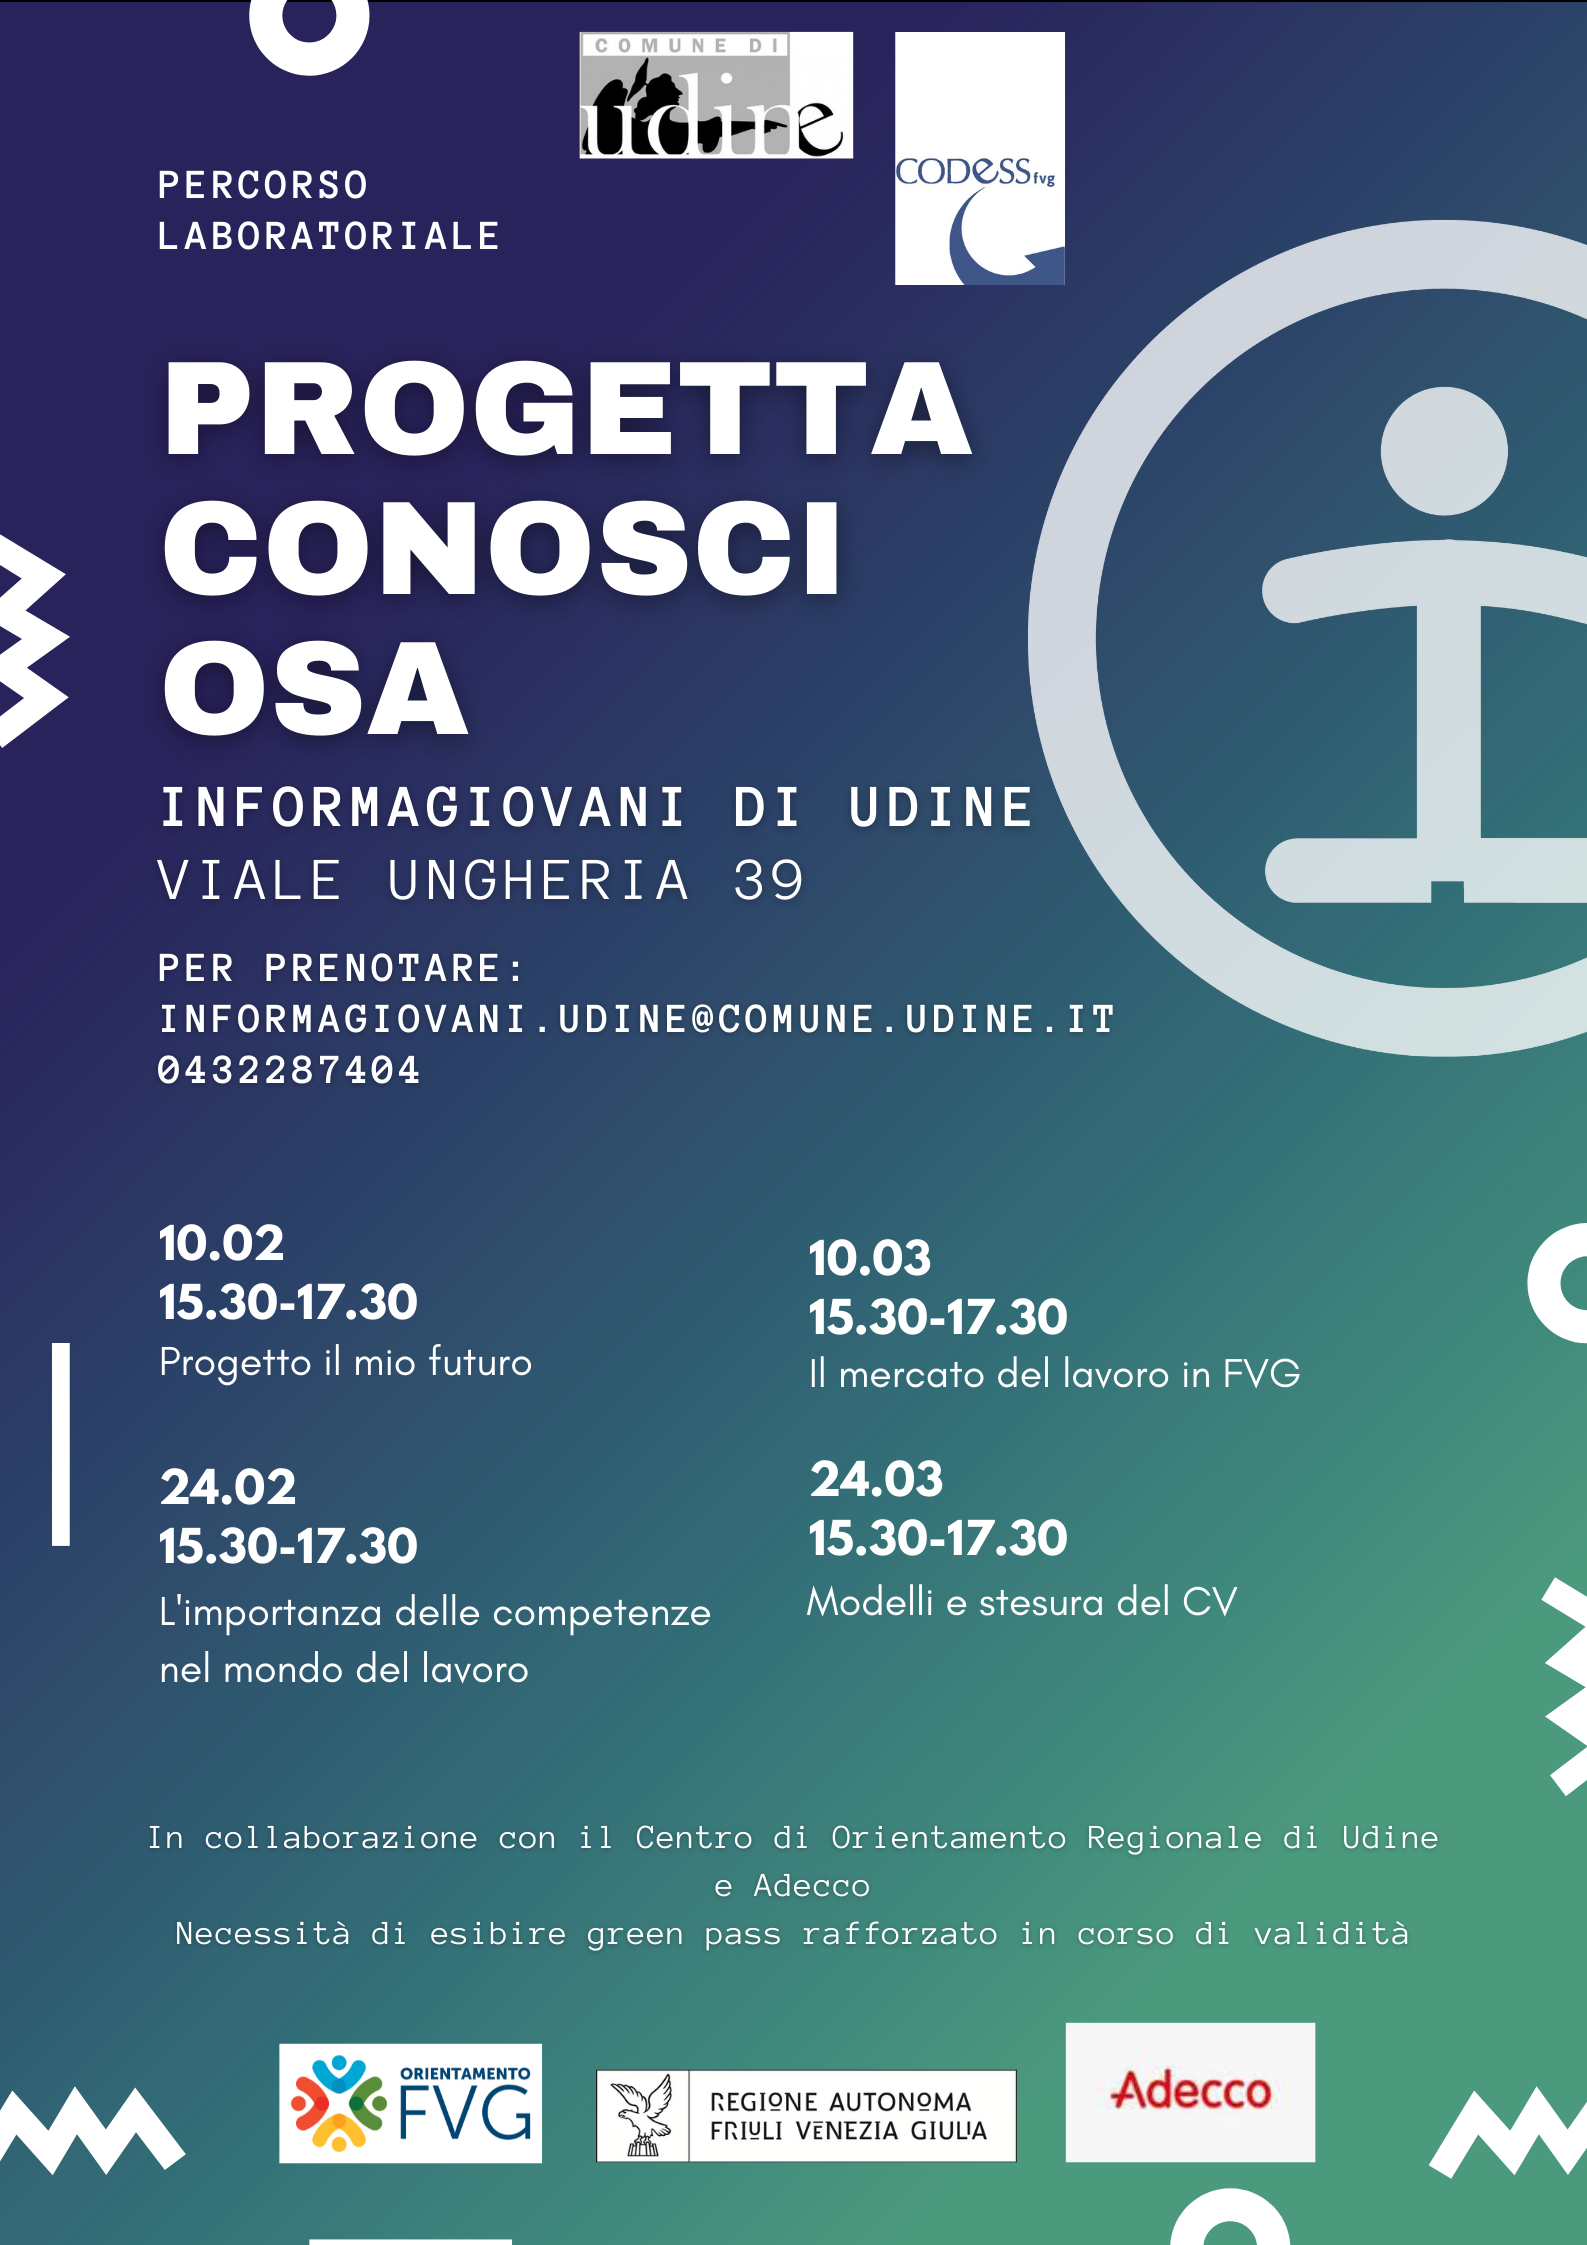 PROGETTA, CONOSCI, OSA - Percorso Formativo InformaGiovani di Udine